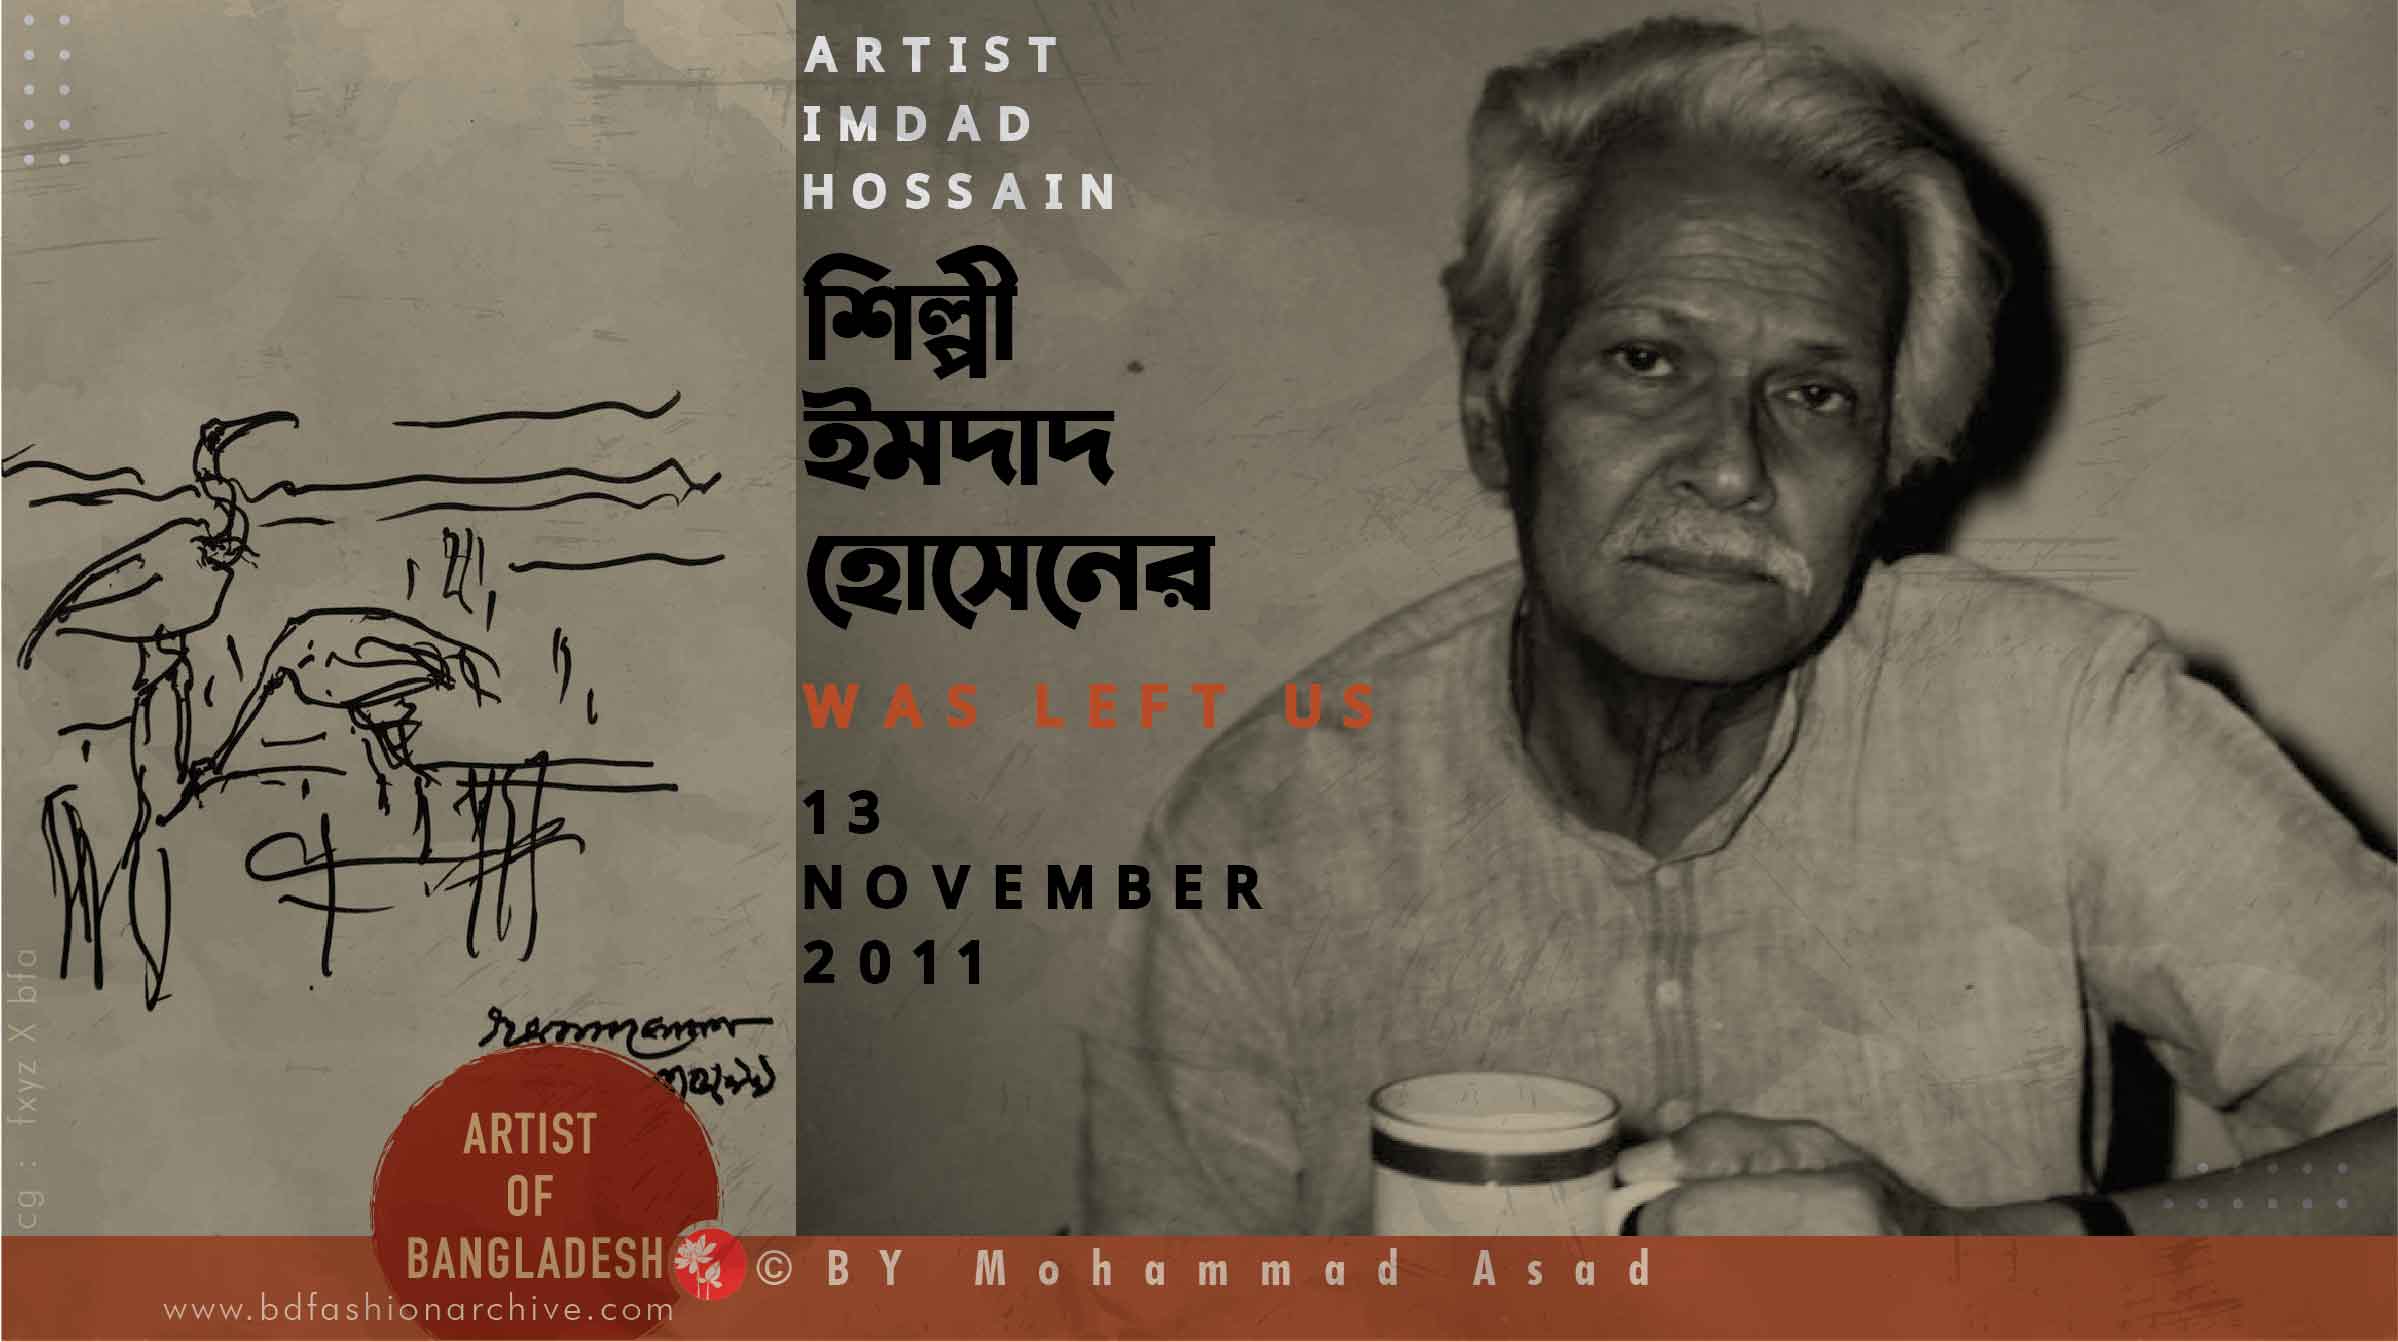 শিল্পী ইমদাদ হোসেন artist imdad hossain web post